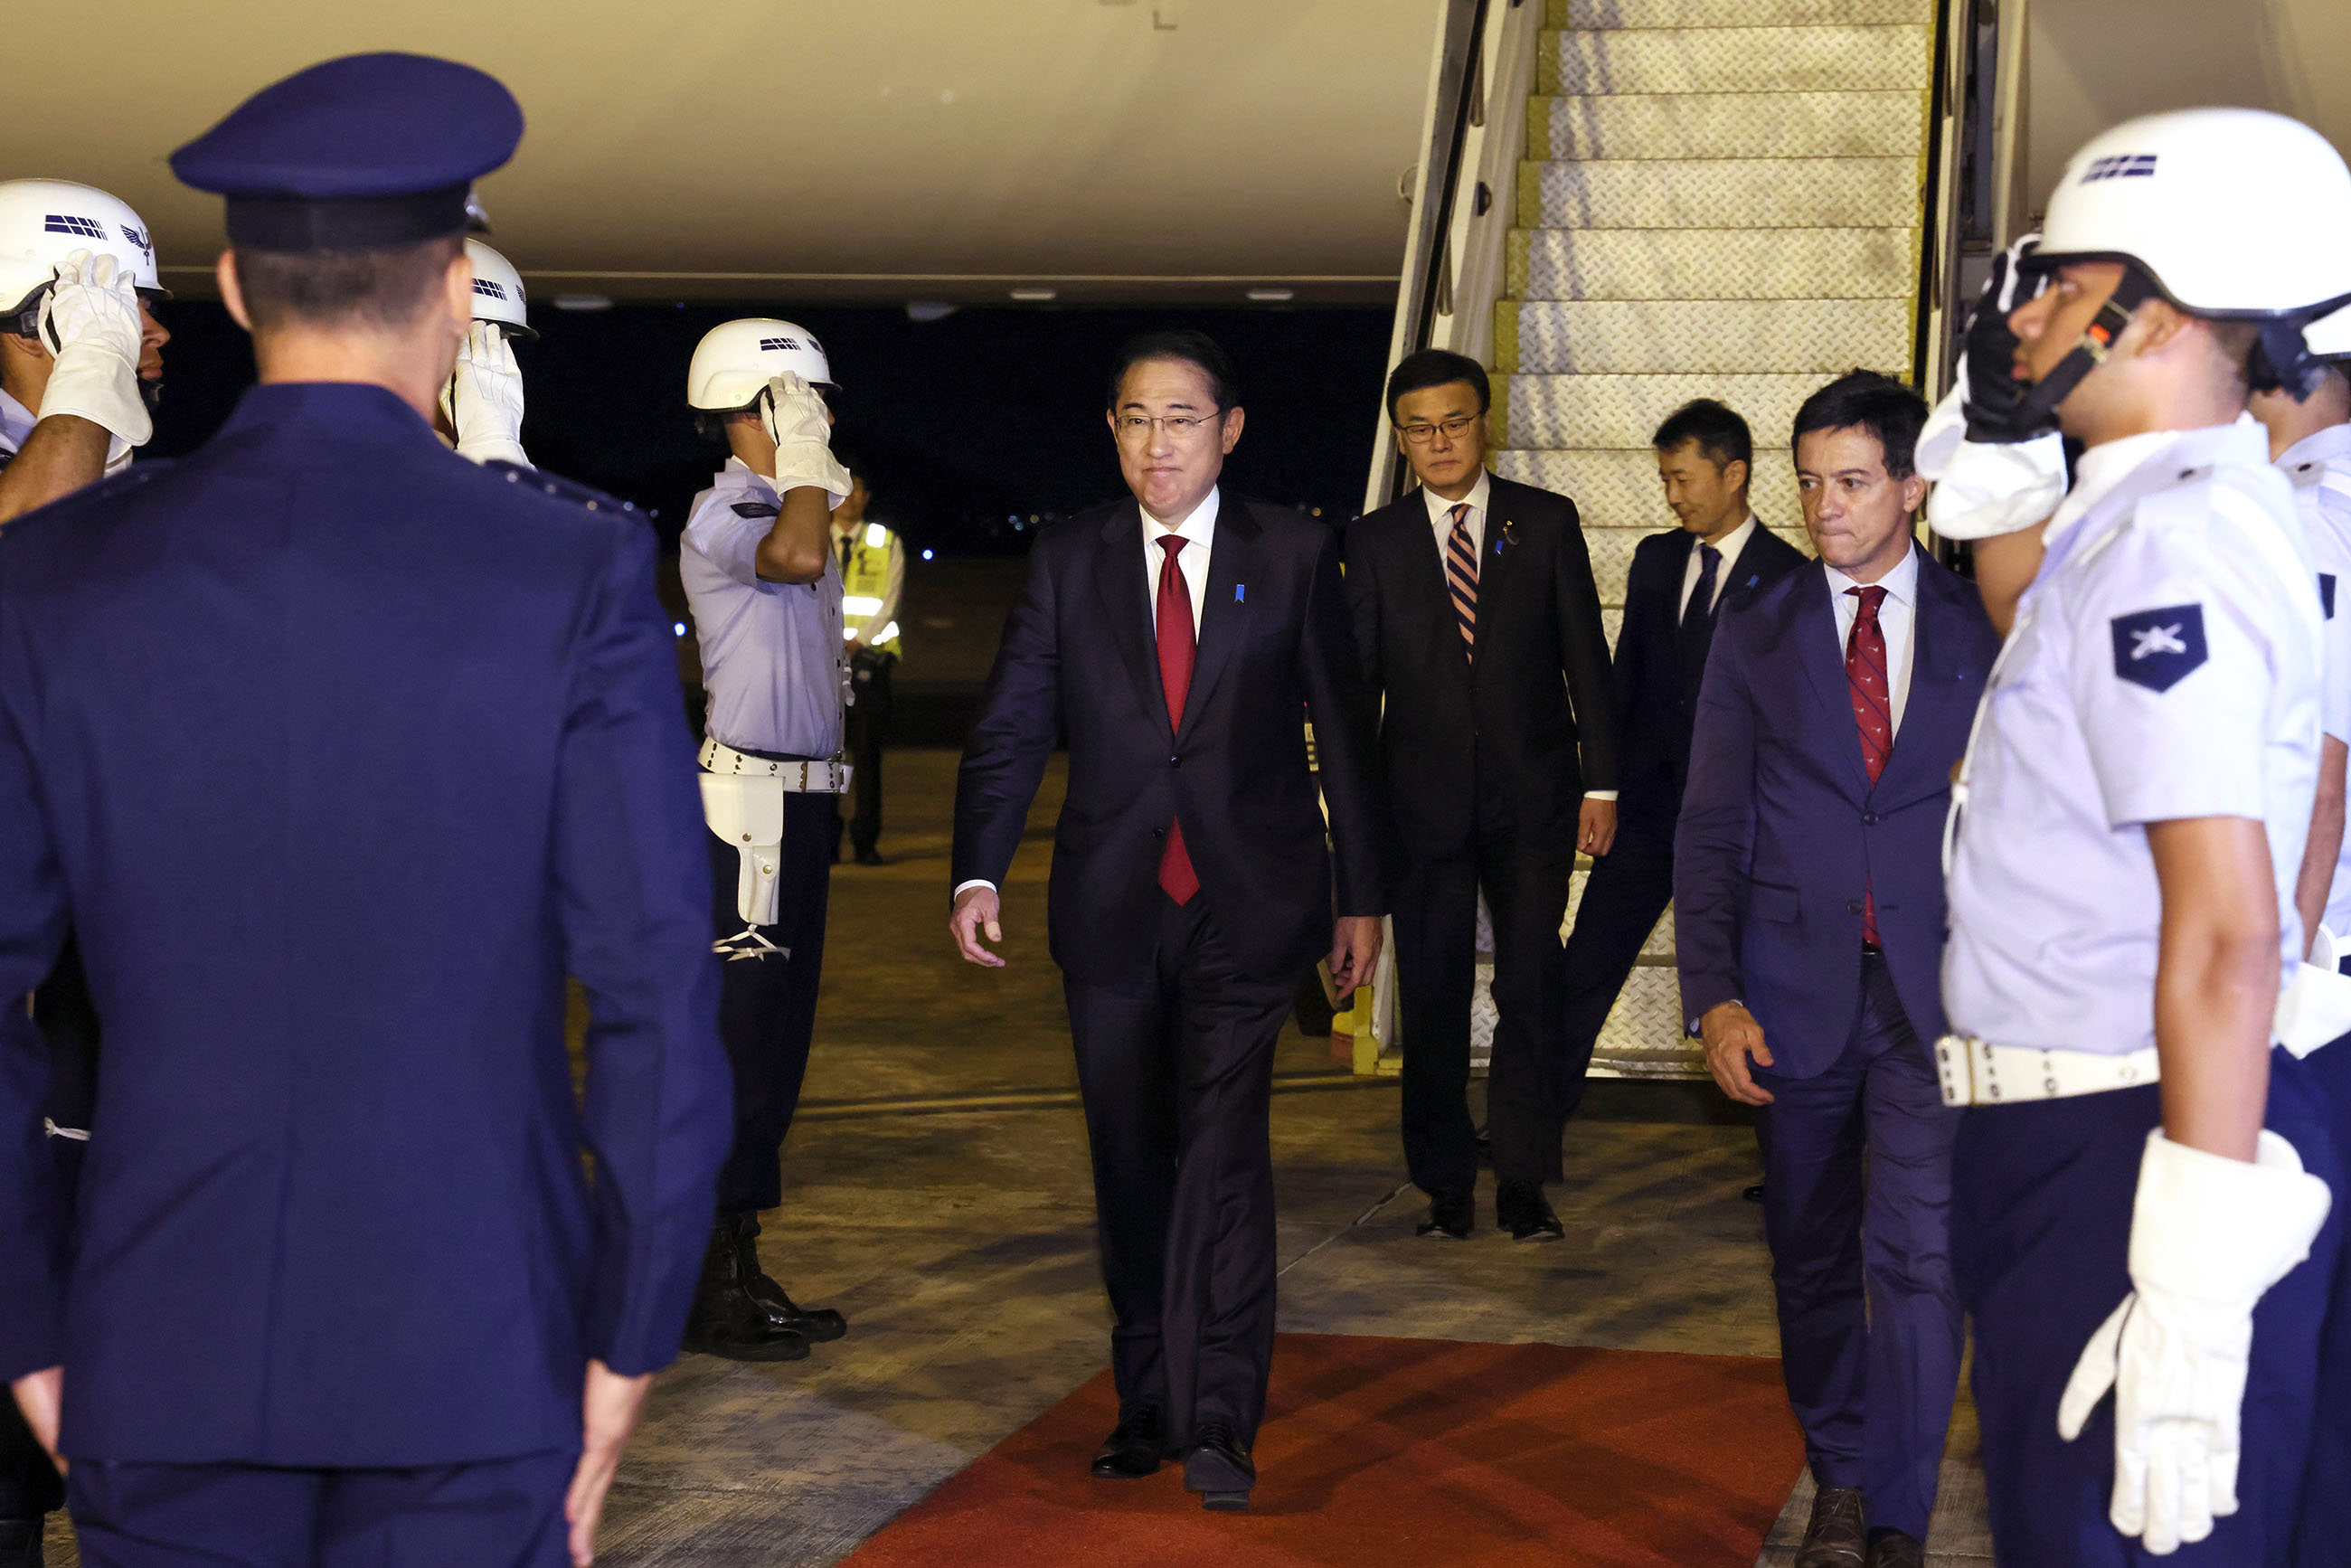 Prime Minister Kishida arriving in Brasilia